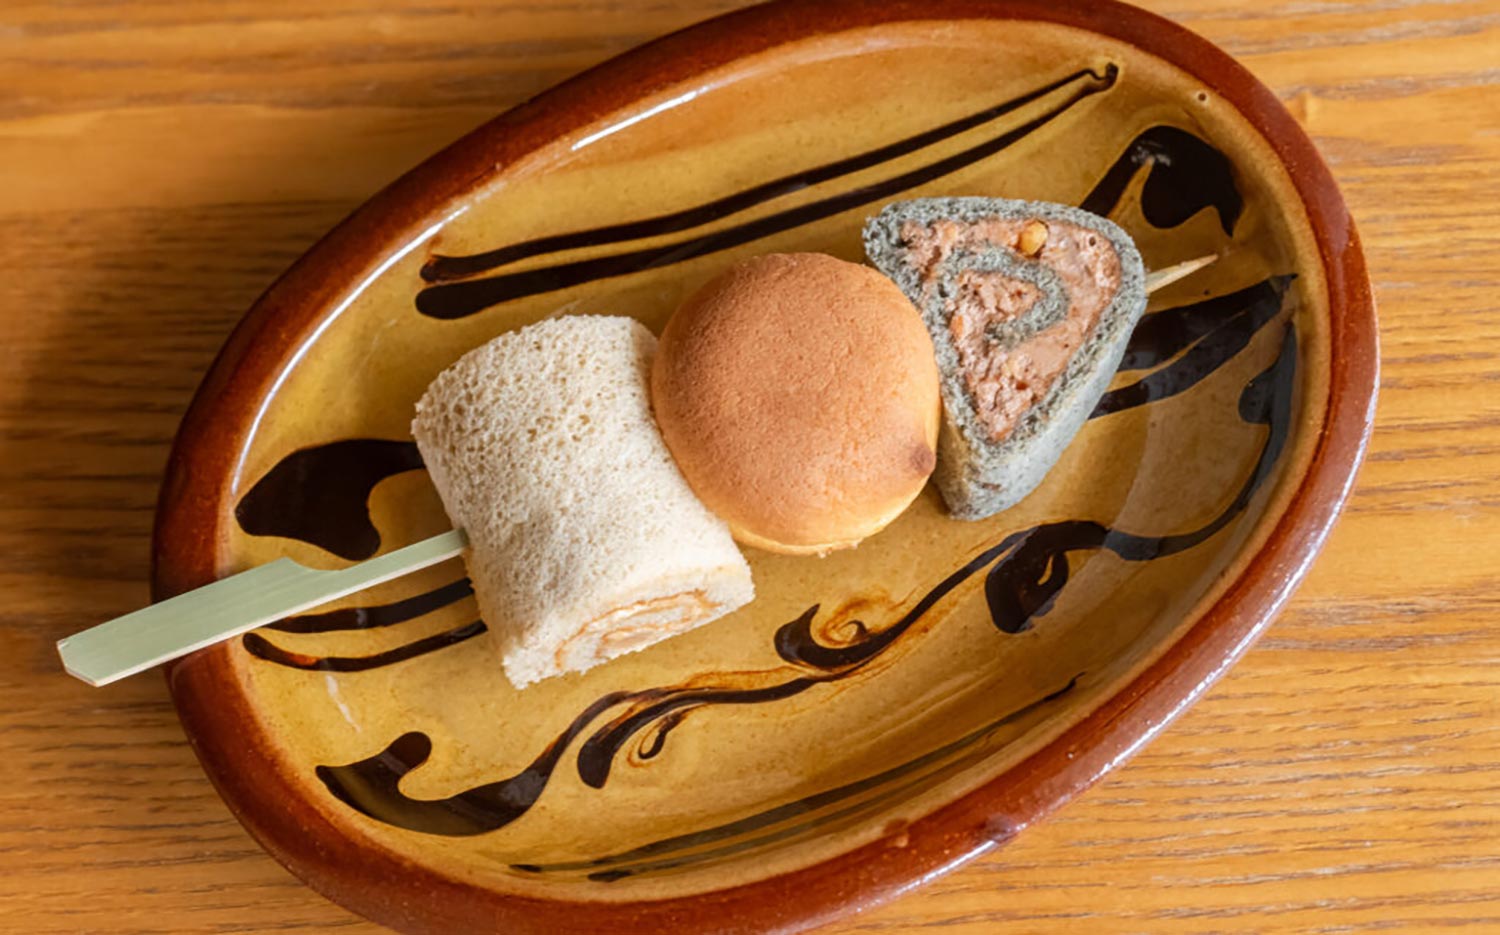 【東京おでんだね】「創作西洋菓子 大陸」の姫路おでんケーキ